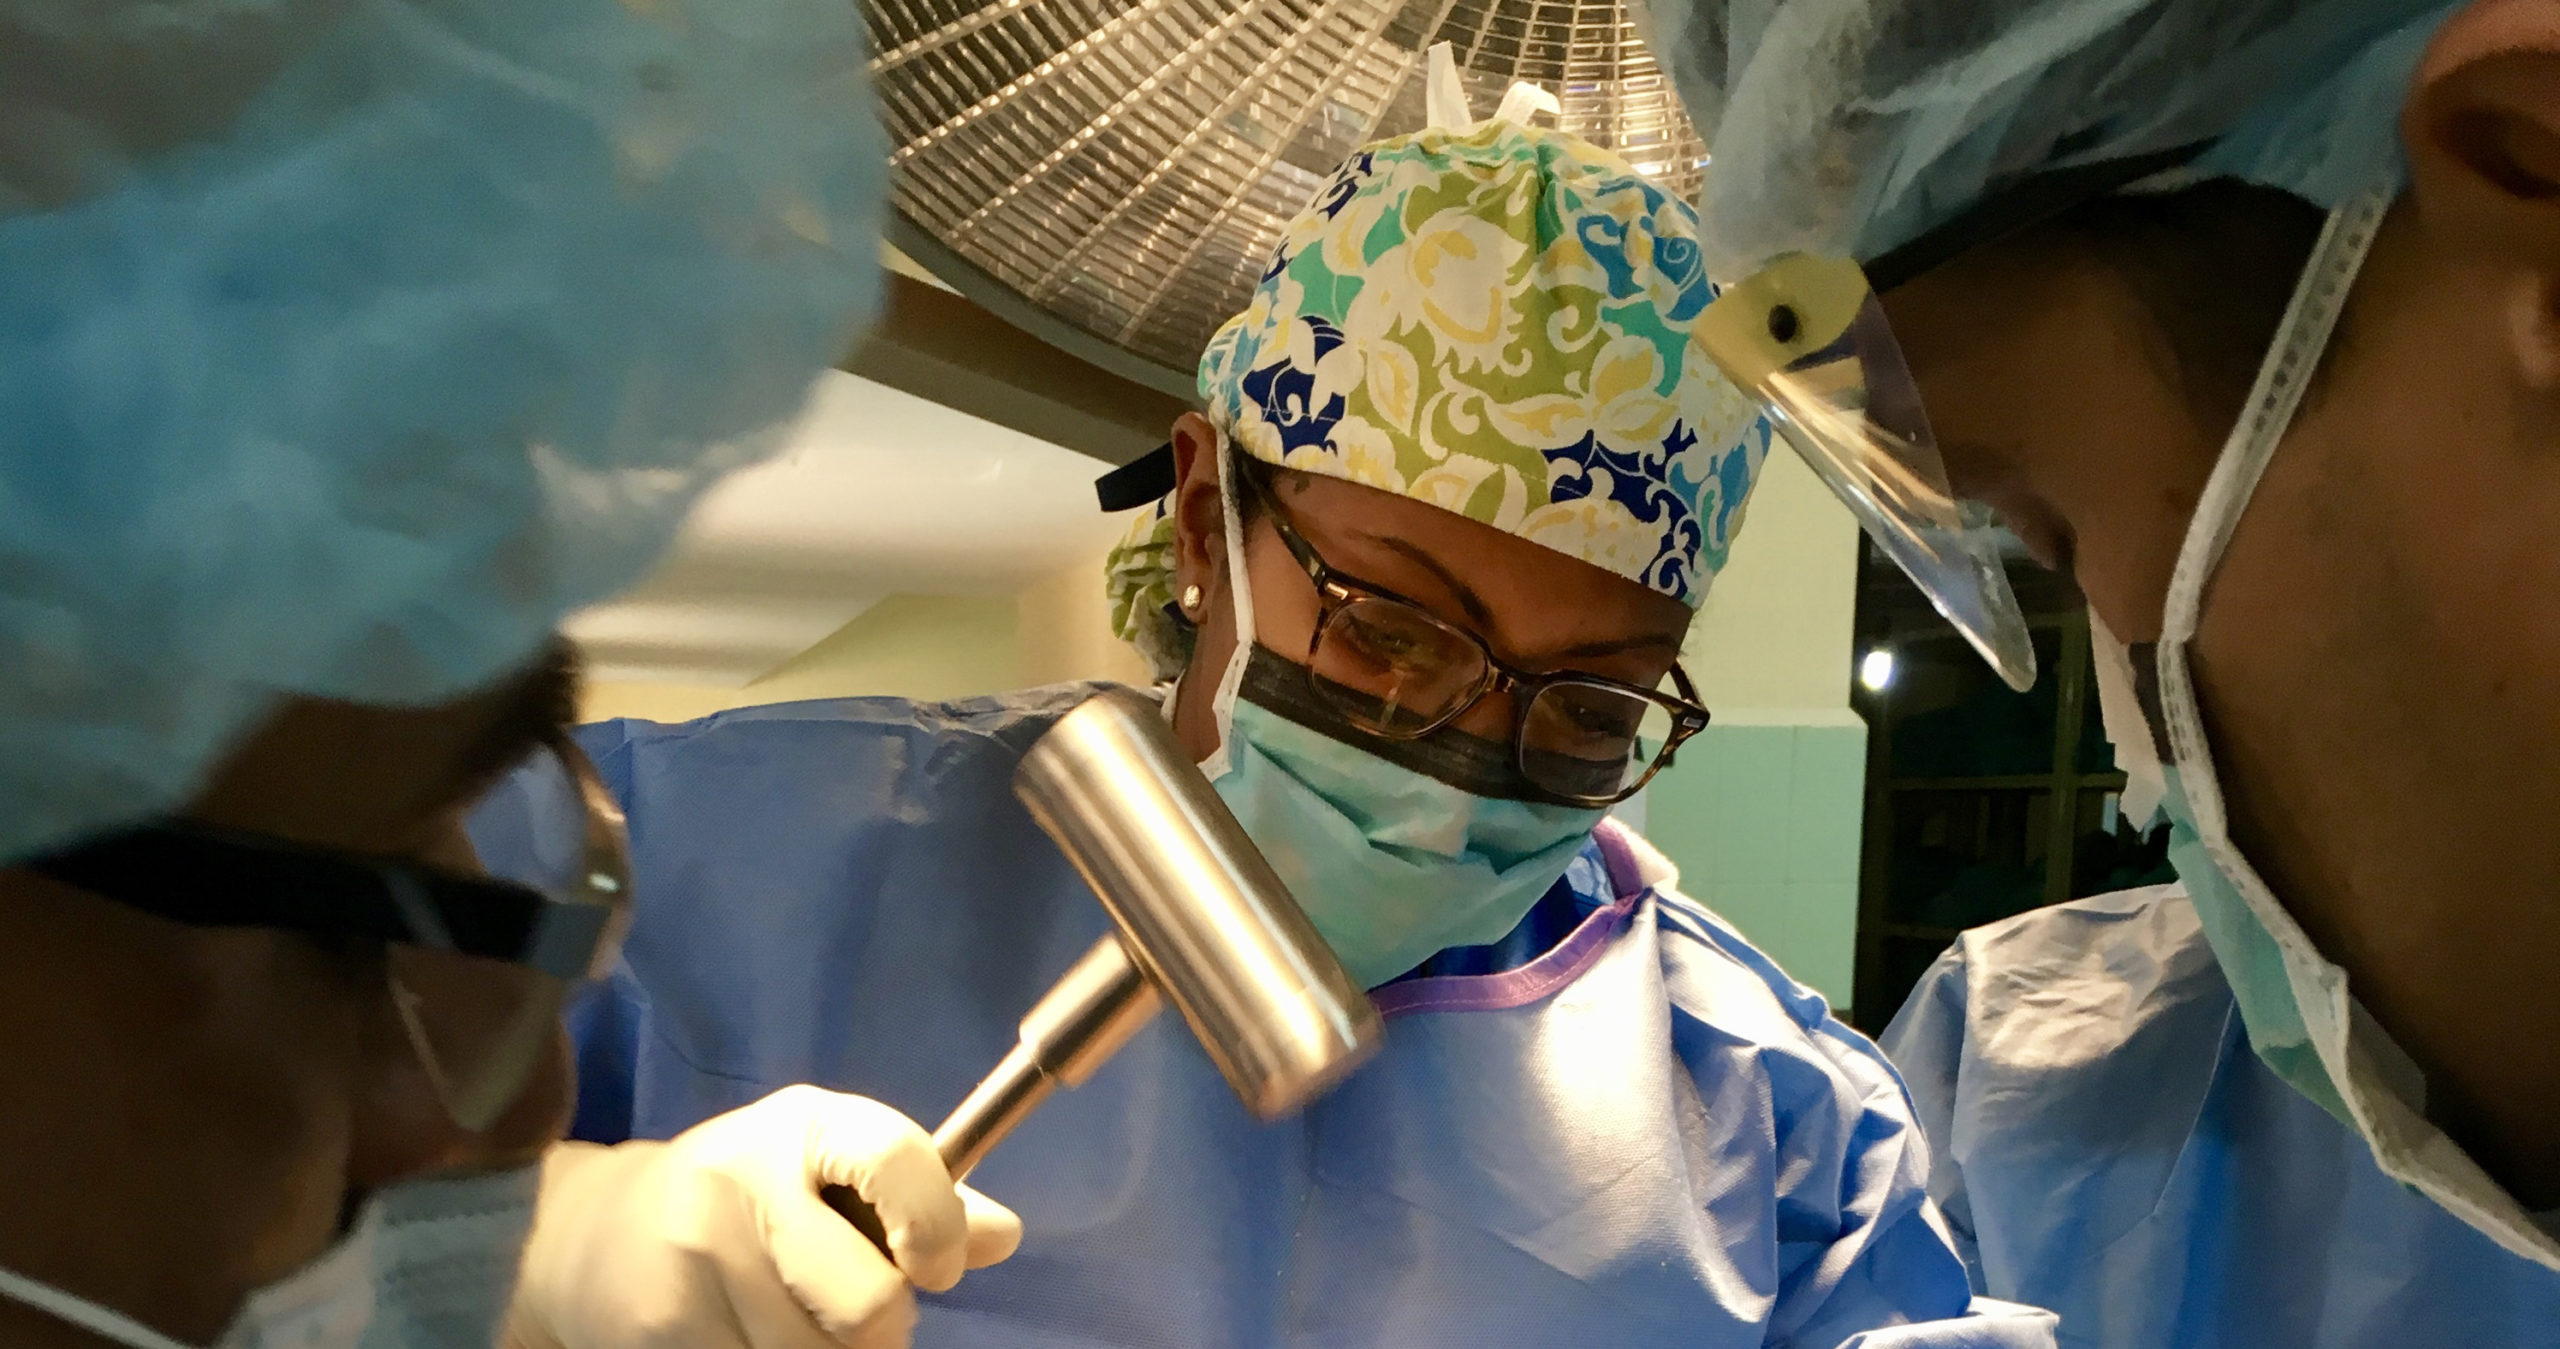 Shoulder Arthroscopy Instability Surgery In Austin Tx